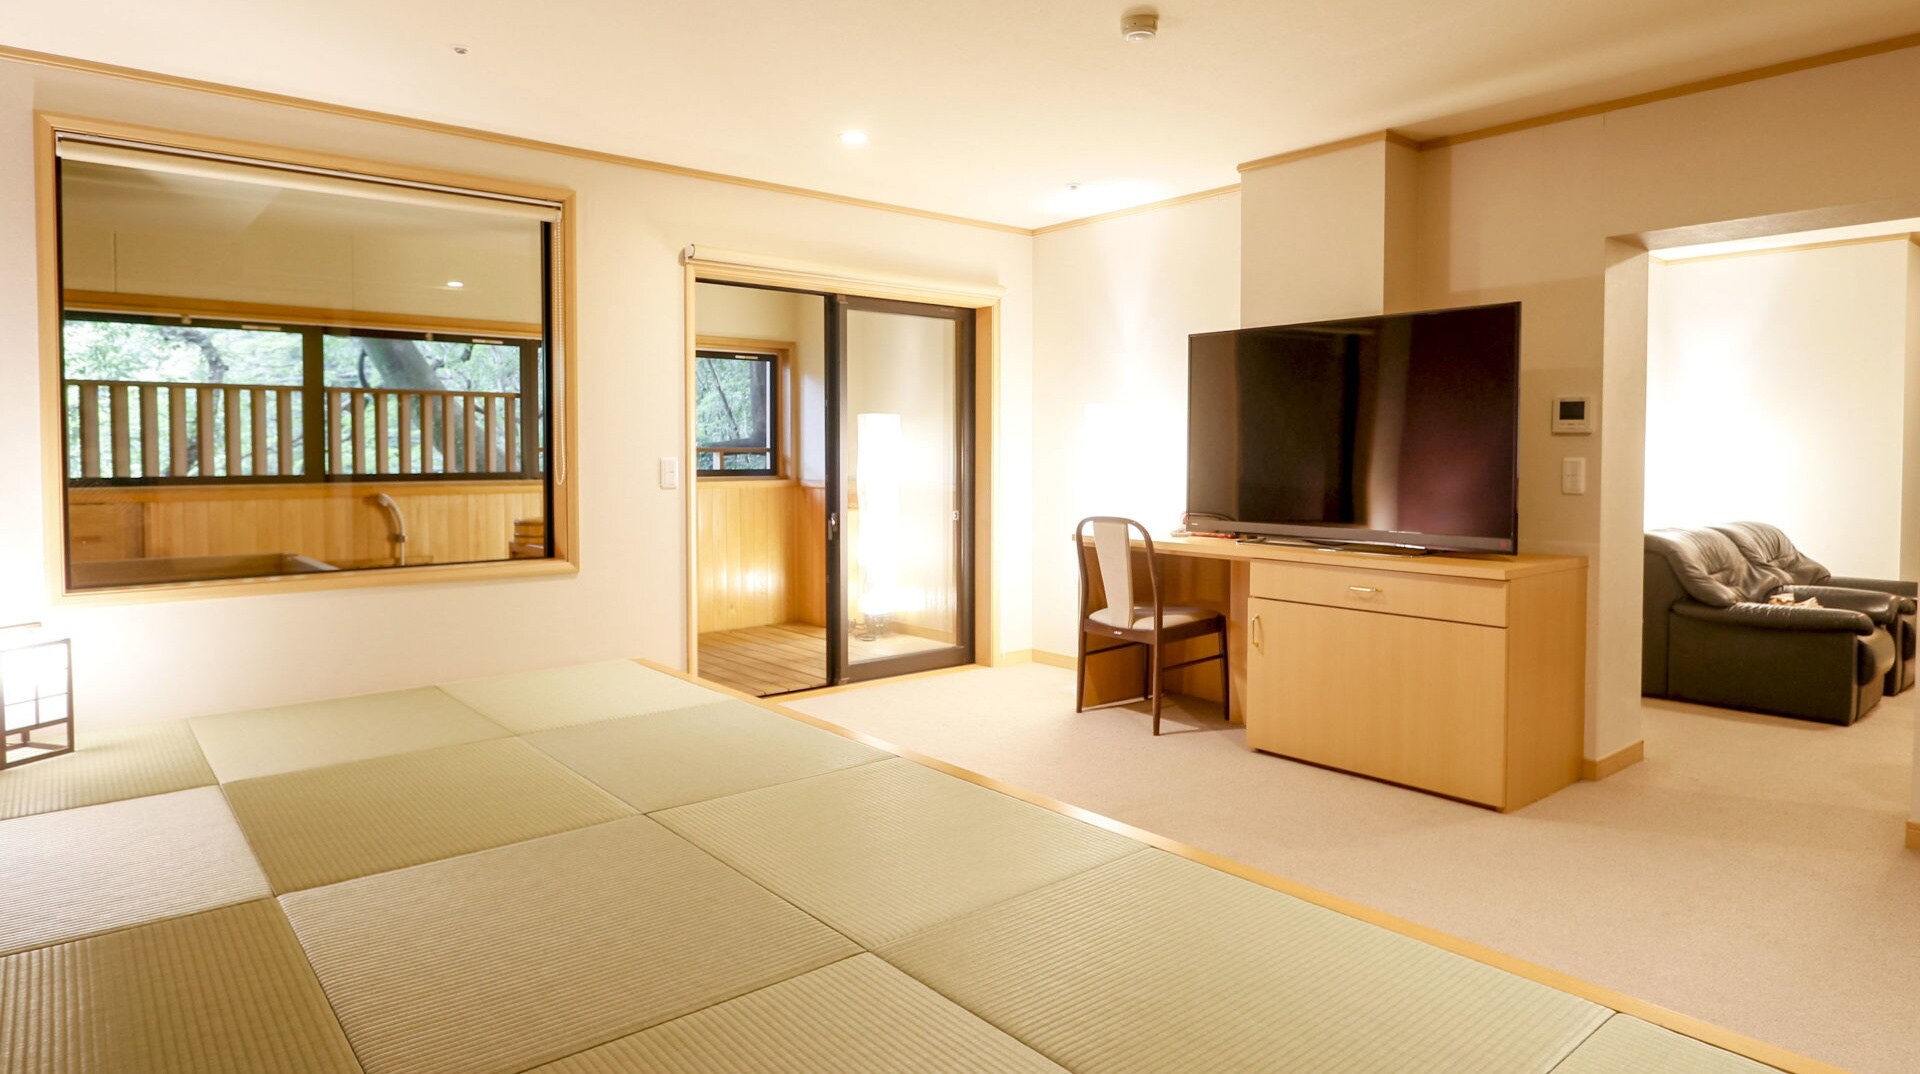 [ฮานาชิโระ: ชิเอ็ง] ห้องสไตล์ญี่ปุ่น-ตะวันตก ประกอบด้วยสามส่วน: ห้องนั่งเล่น ห้องสไตล์ญี่ปุ่น และห้องเล็ก